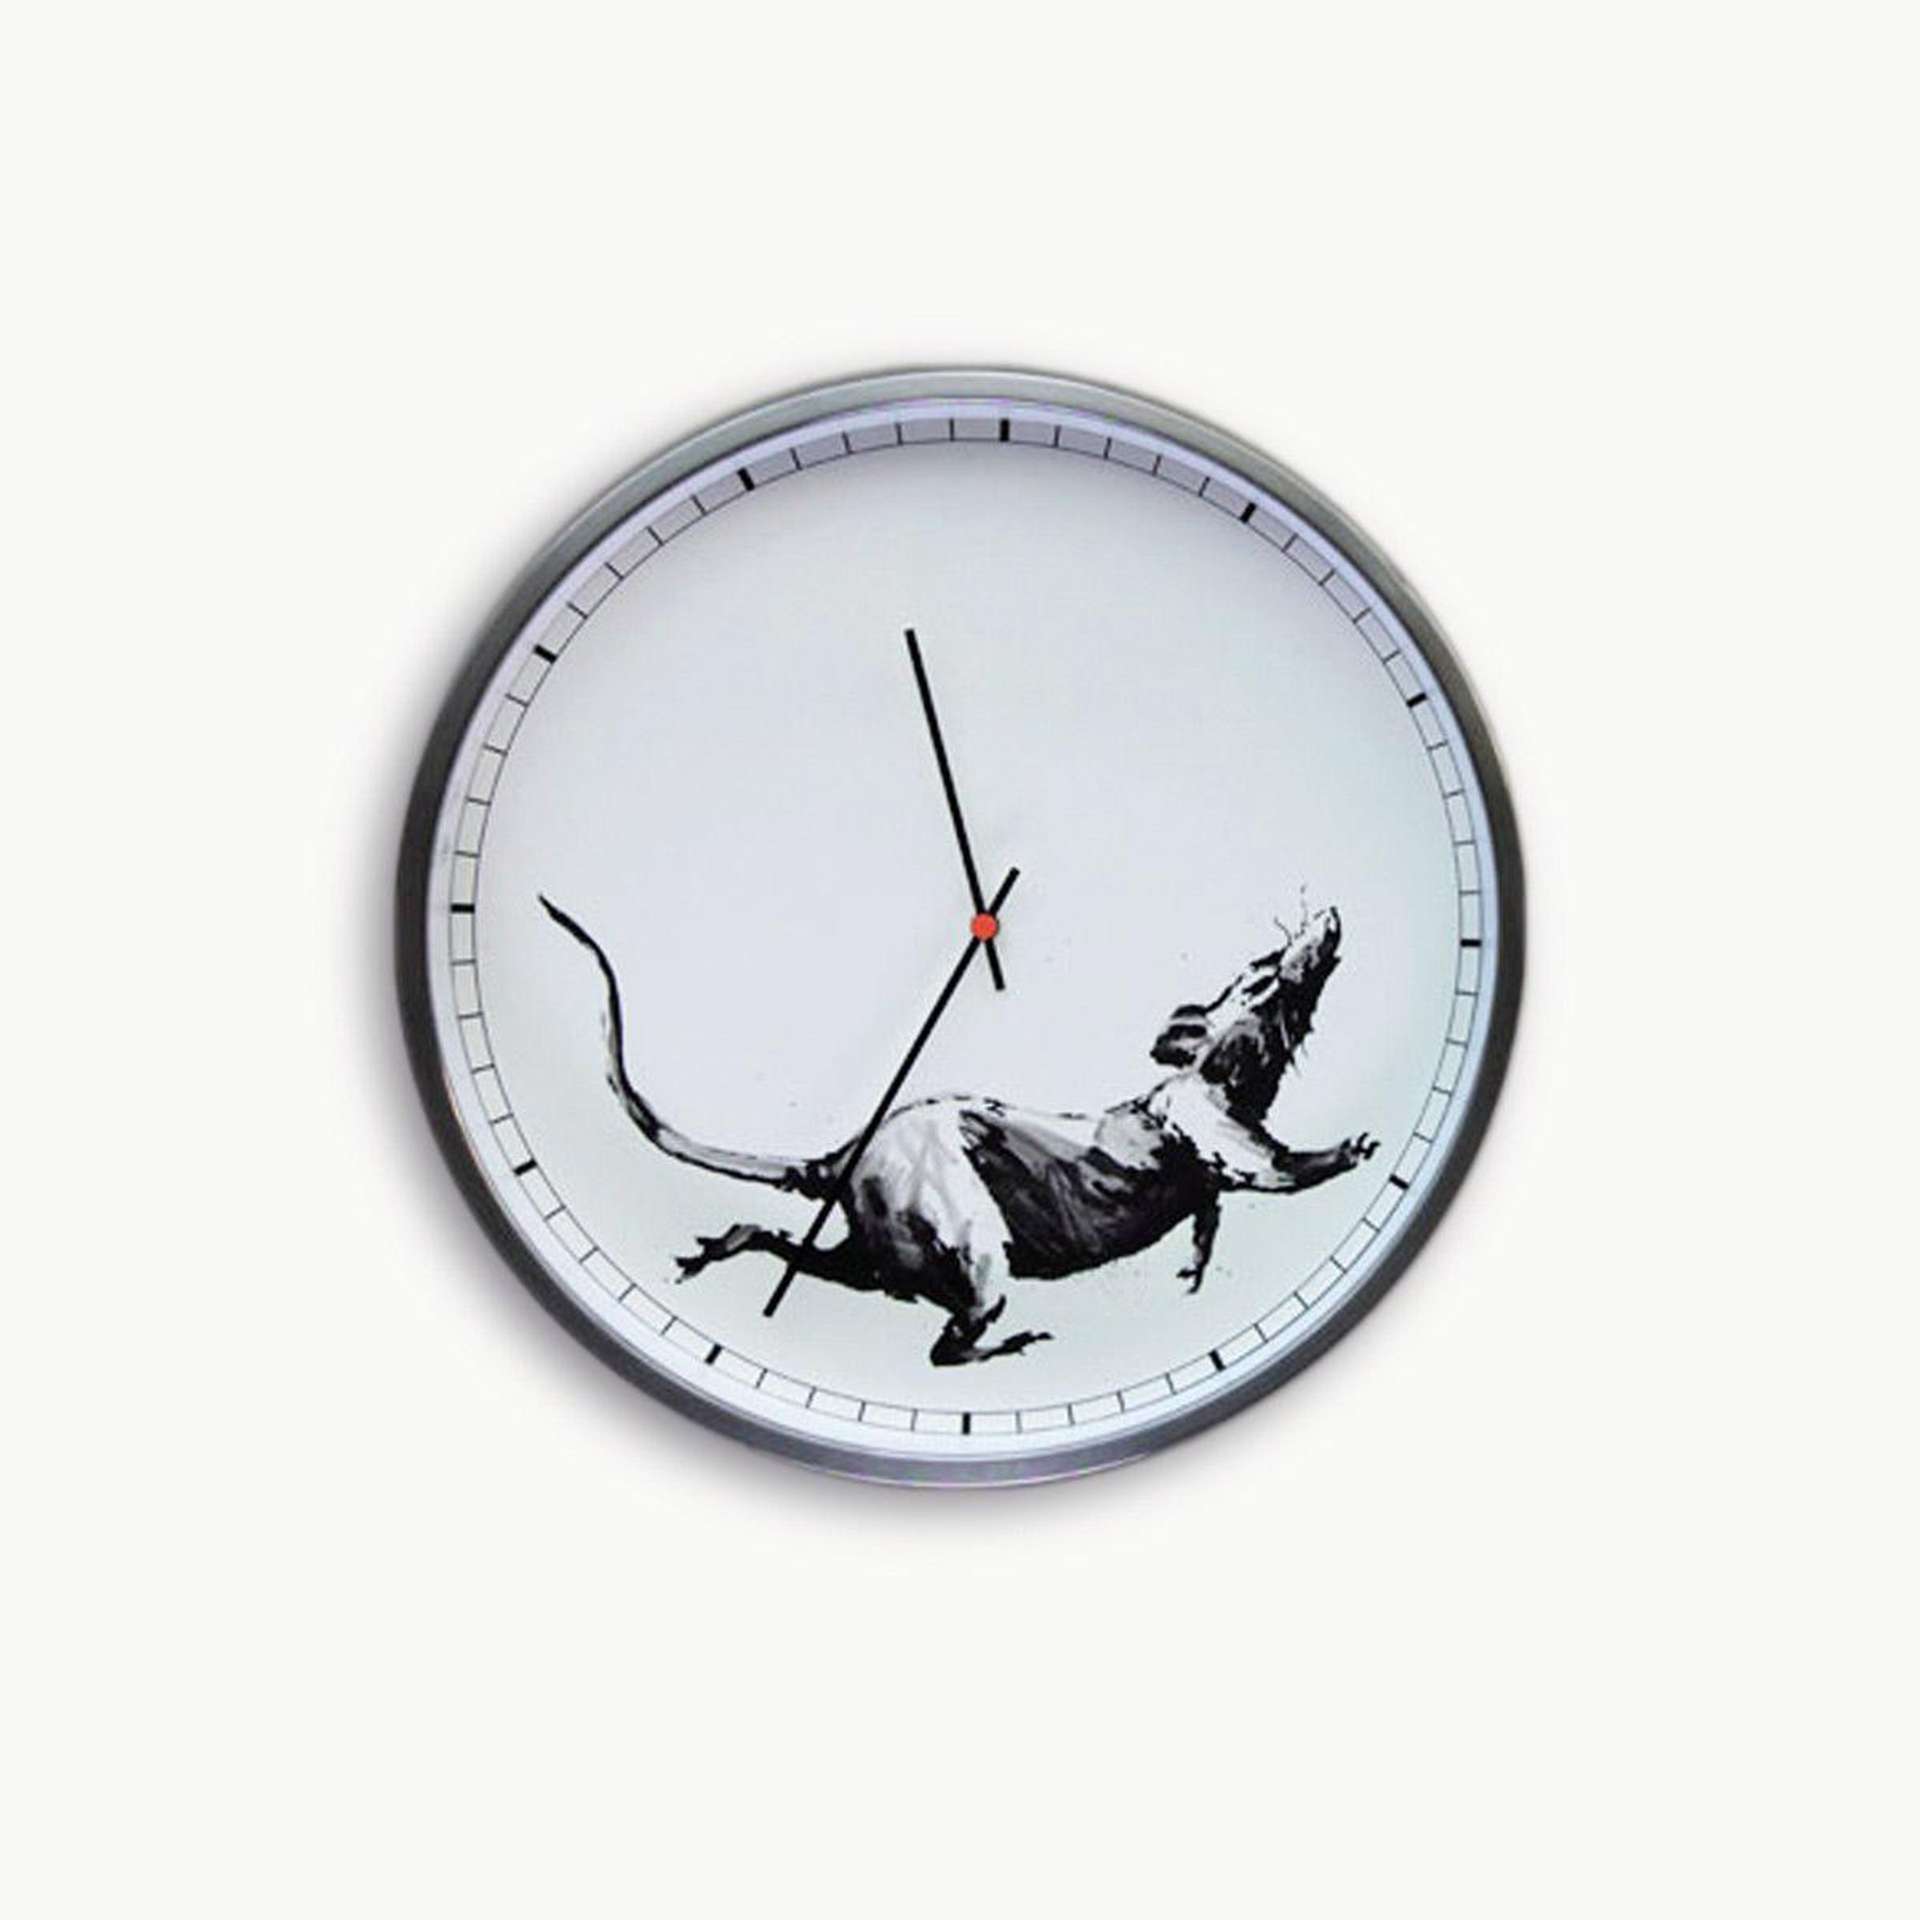 Banksy™ Clock by Banksy - MyArtBroker